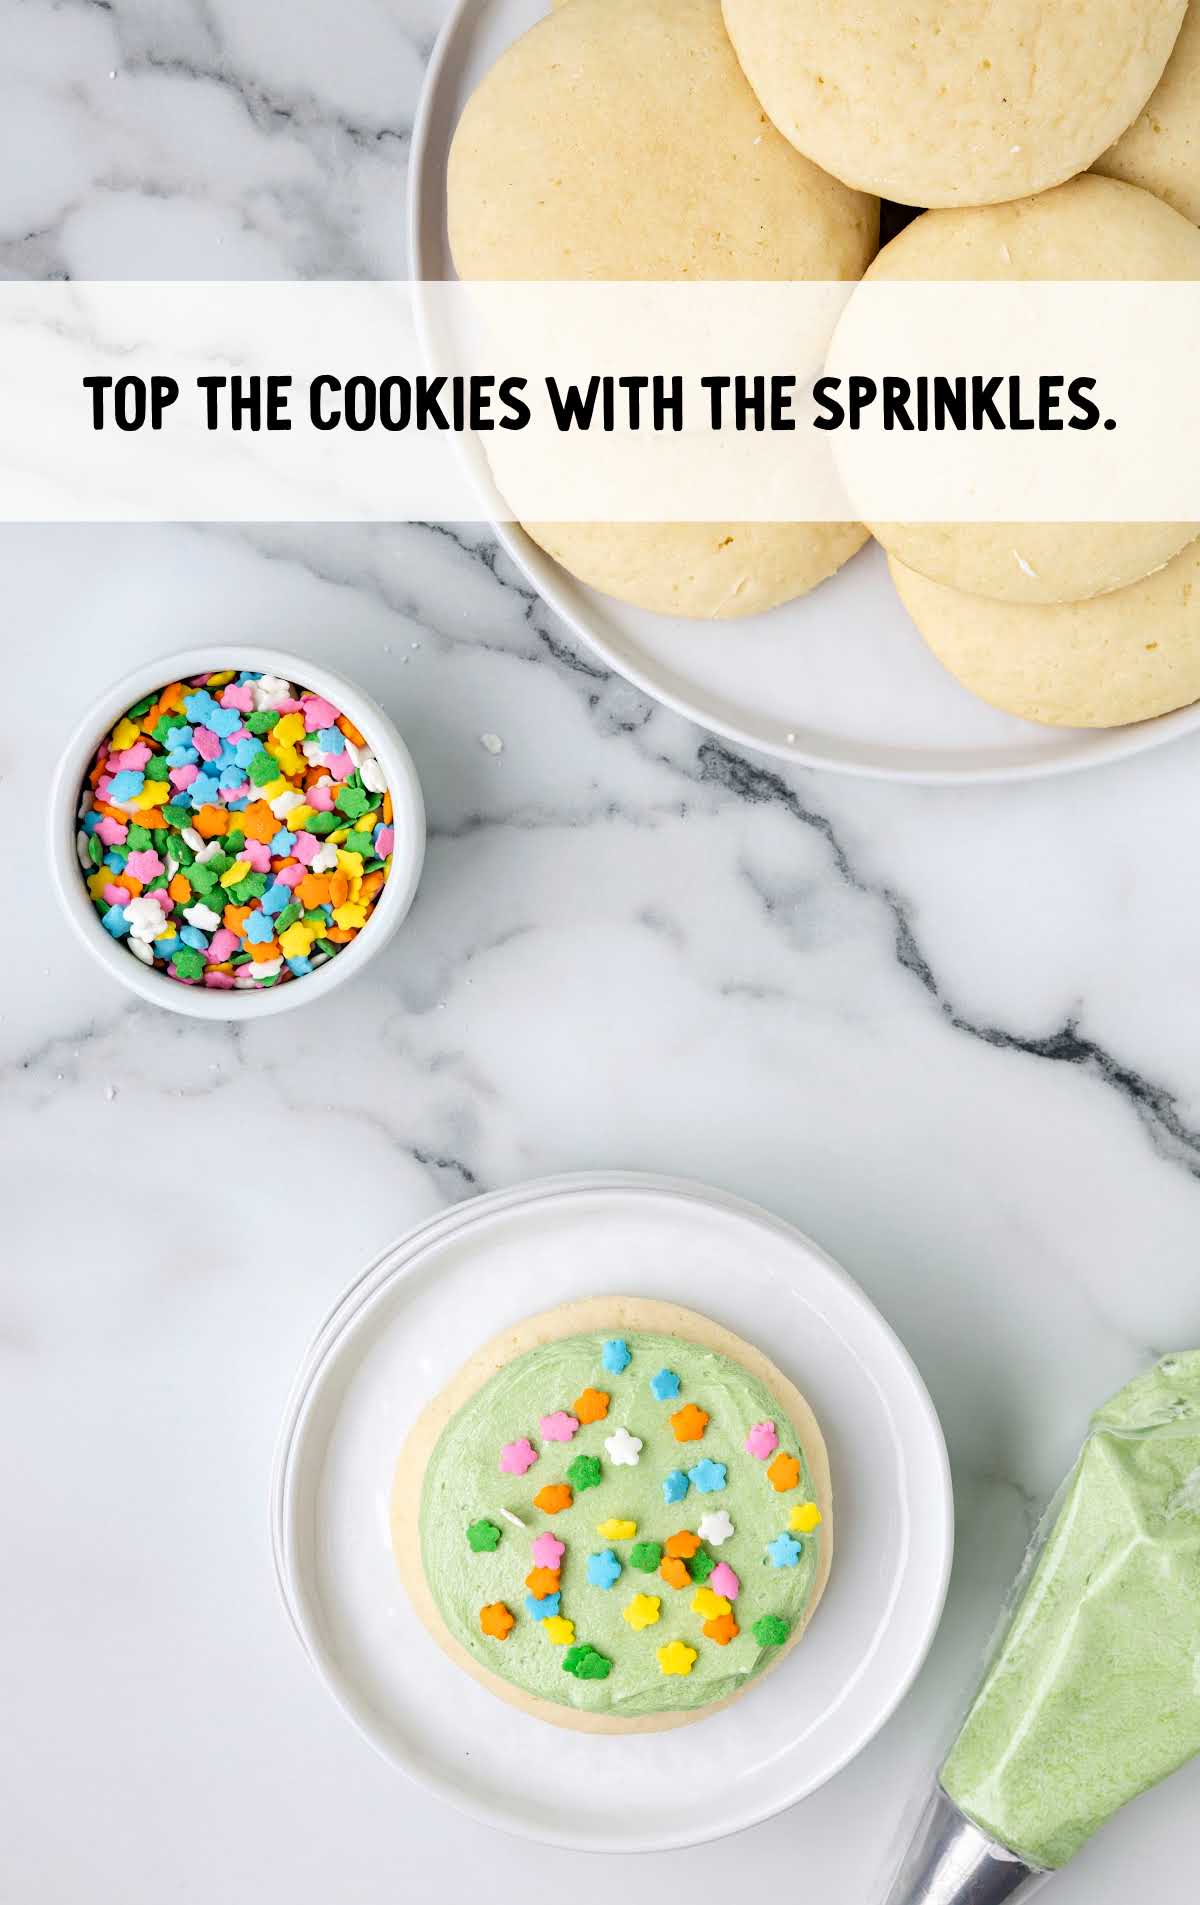 sprinkles sprinkled over the cookies